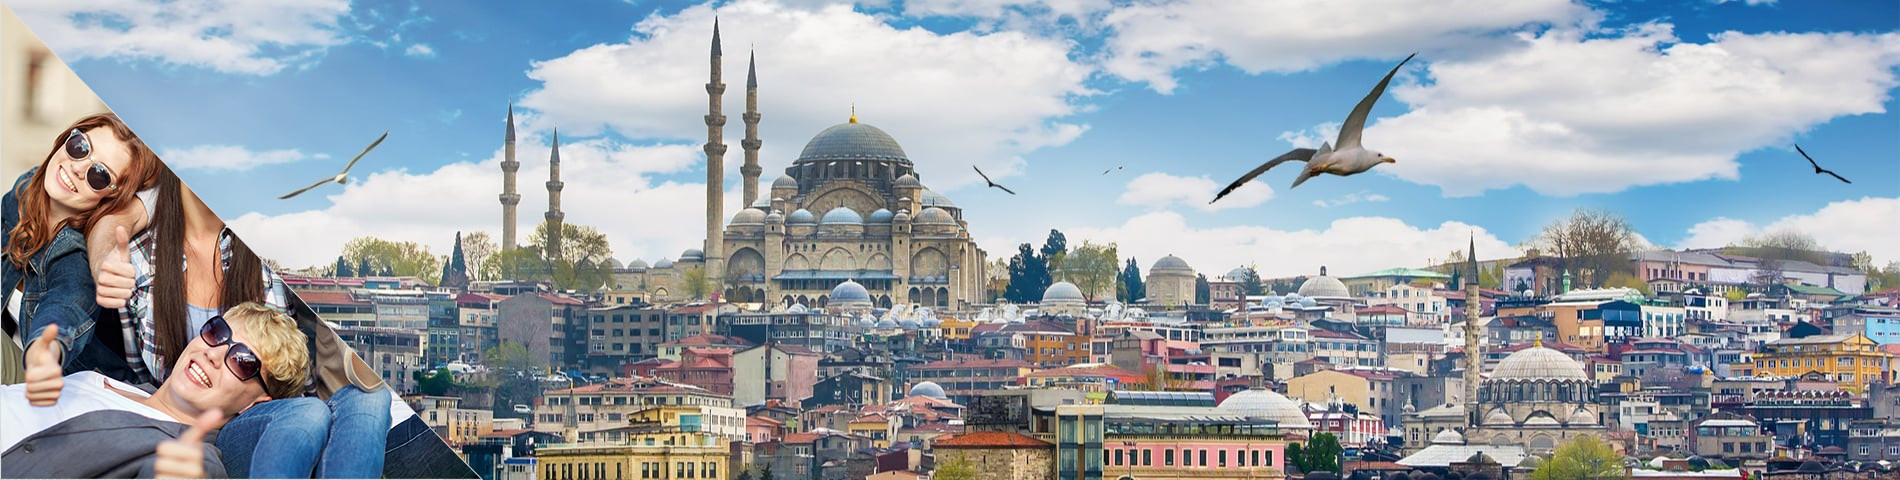 أسطنبول - الرحلات المدرسية / المجموعات